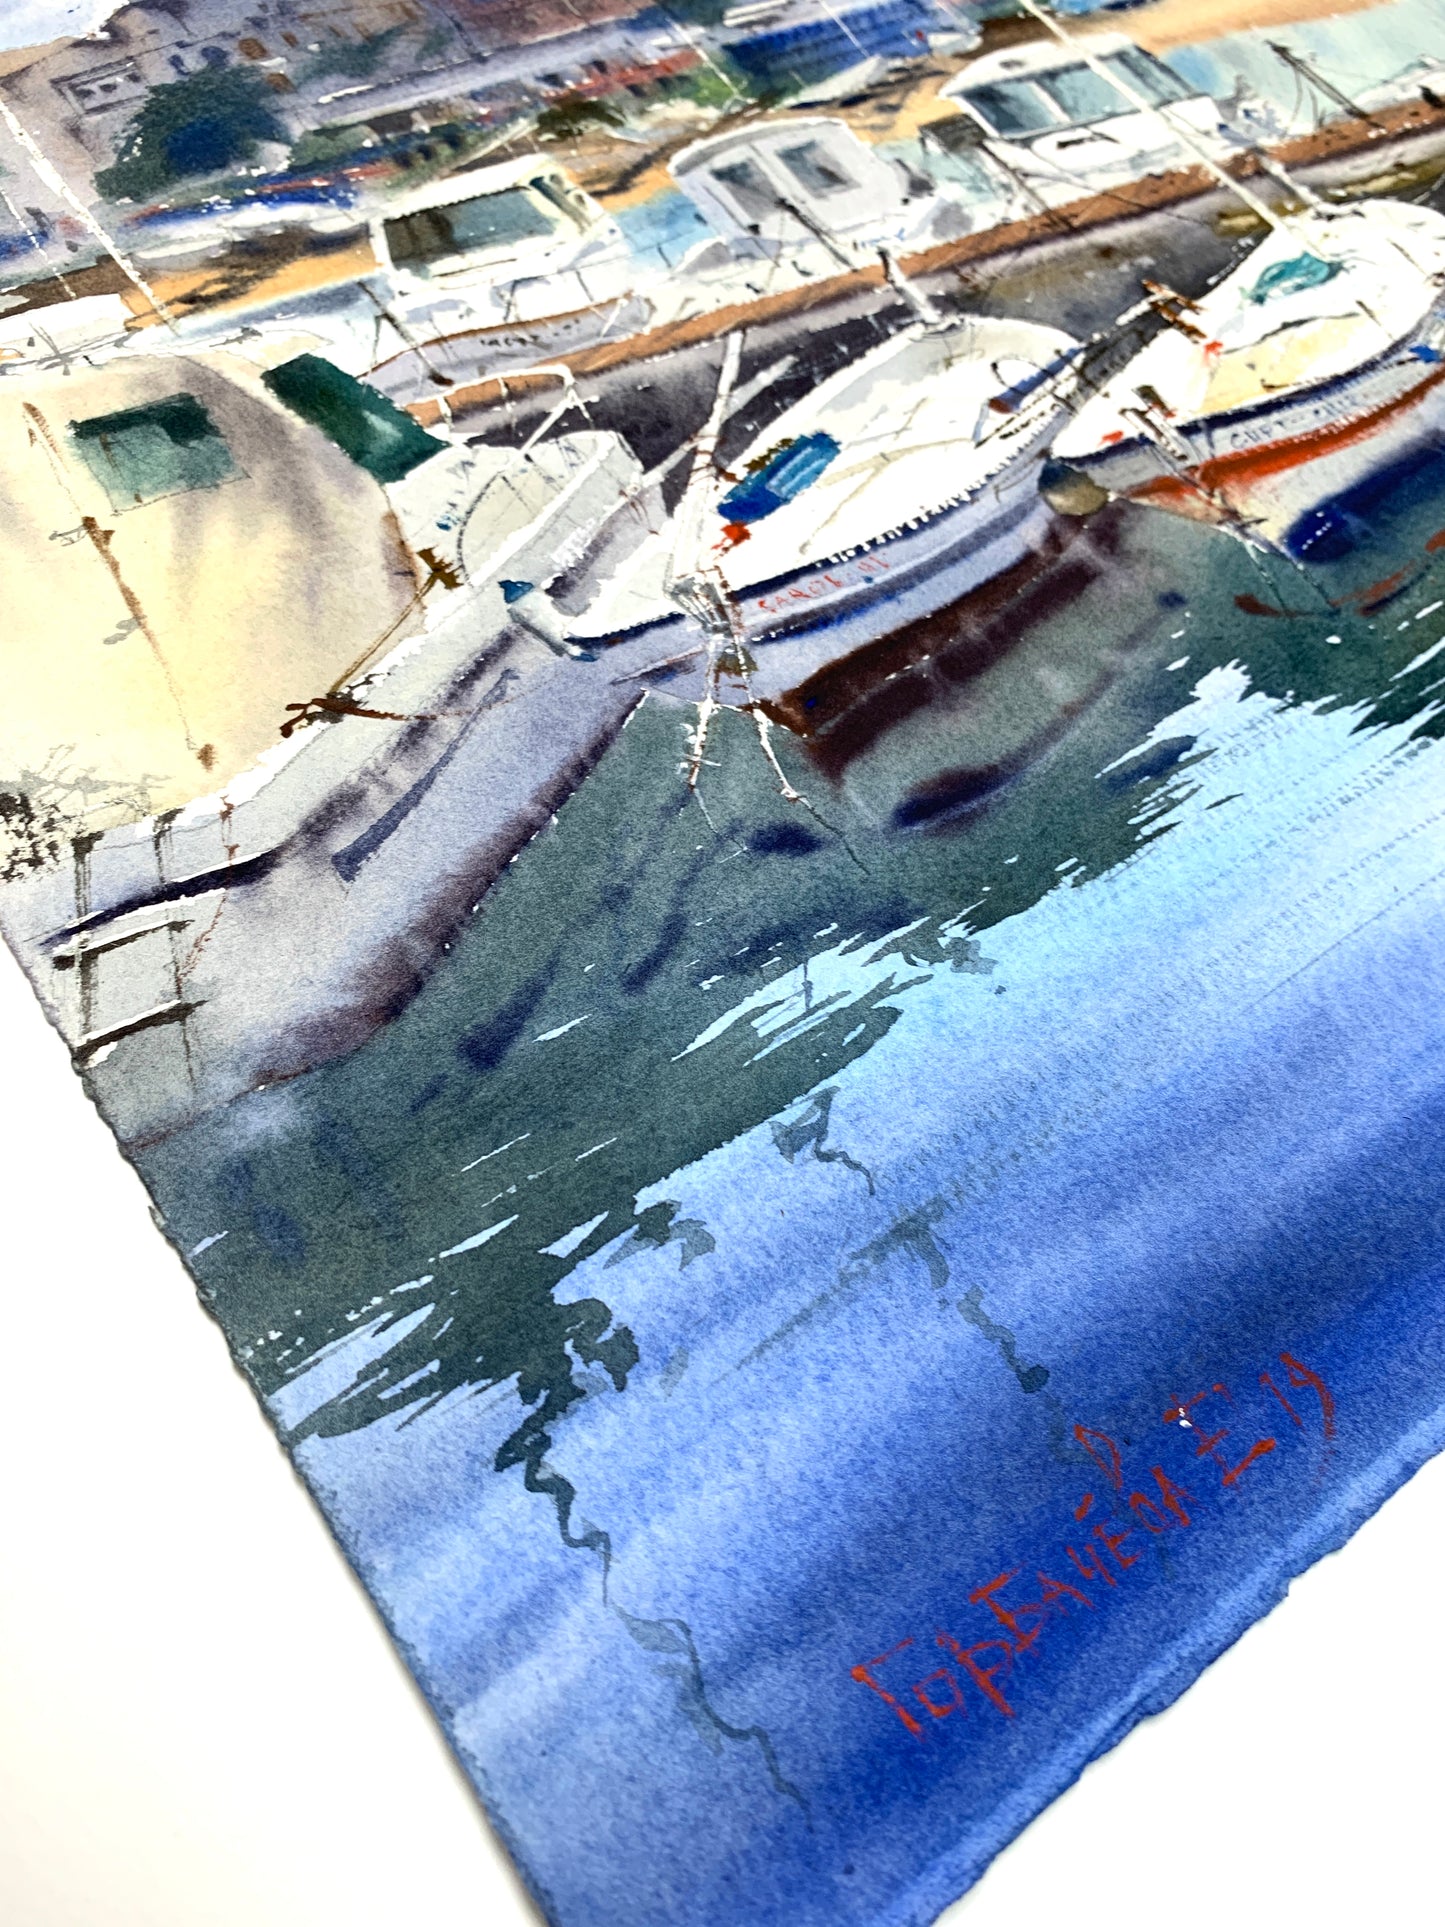 Original Painting Watercolor Artwork - Boats in Palamos, Spain #2 - 22x15 in